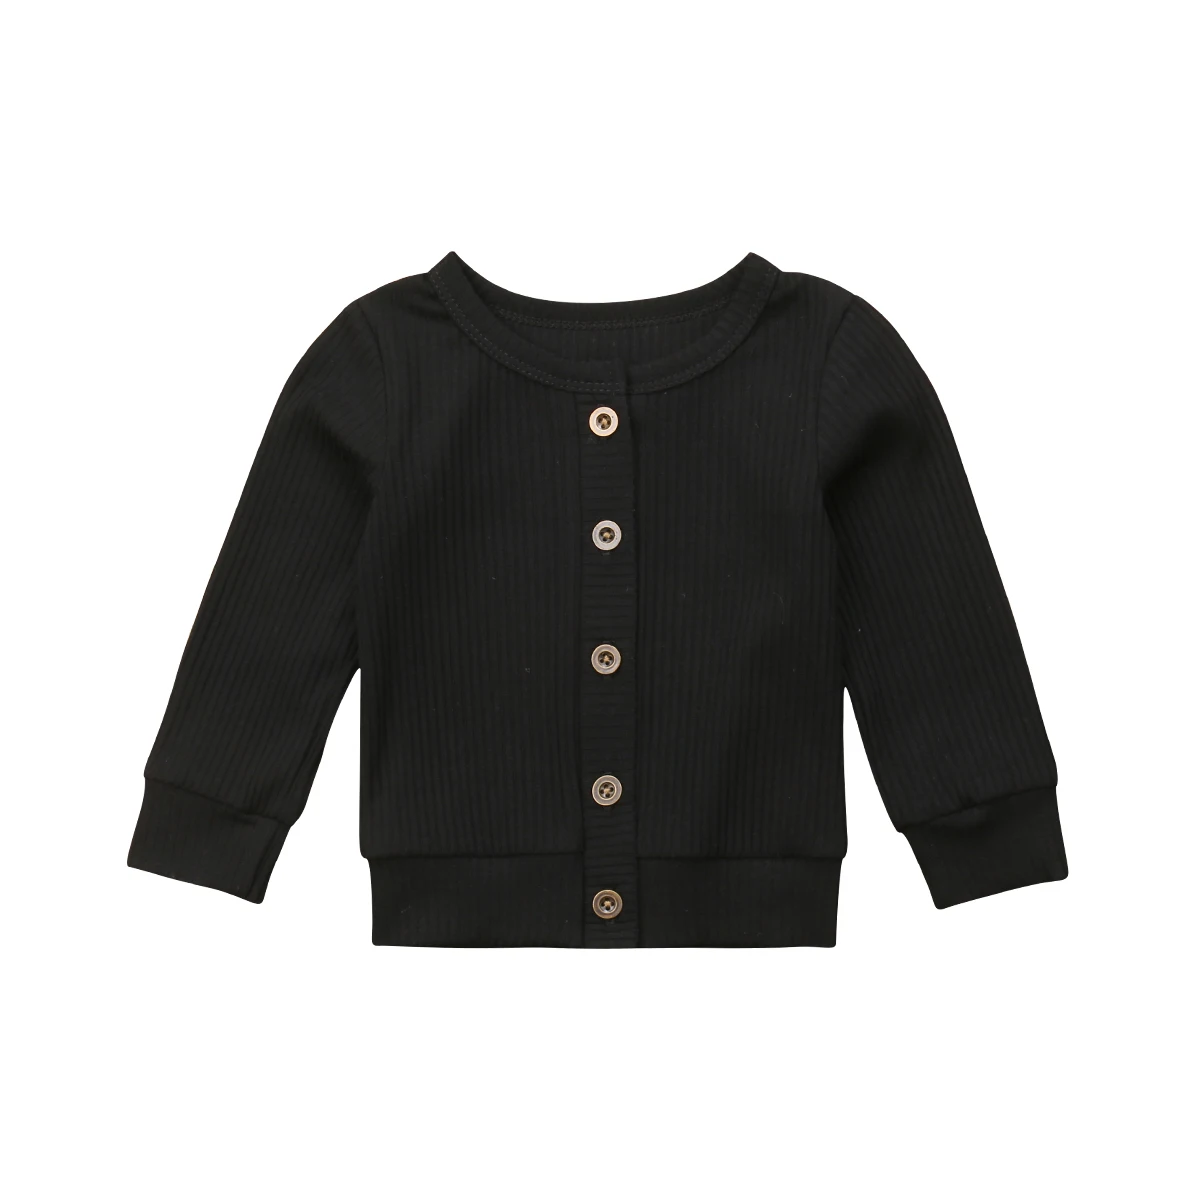 Новорожденных Одежда для маленьких девочек кнопка вязаный свитер кардиган пальто Топы - Цвет: Черный